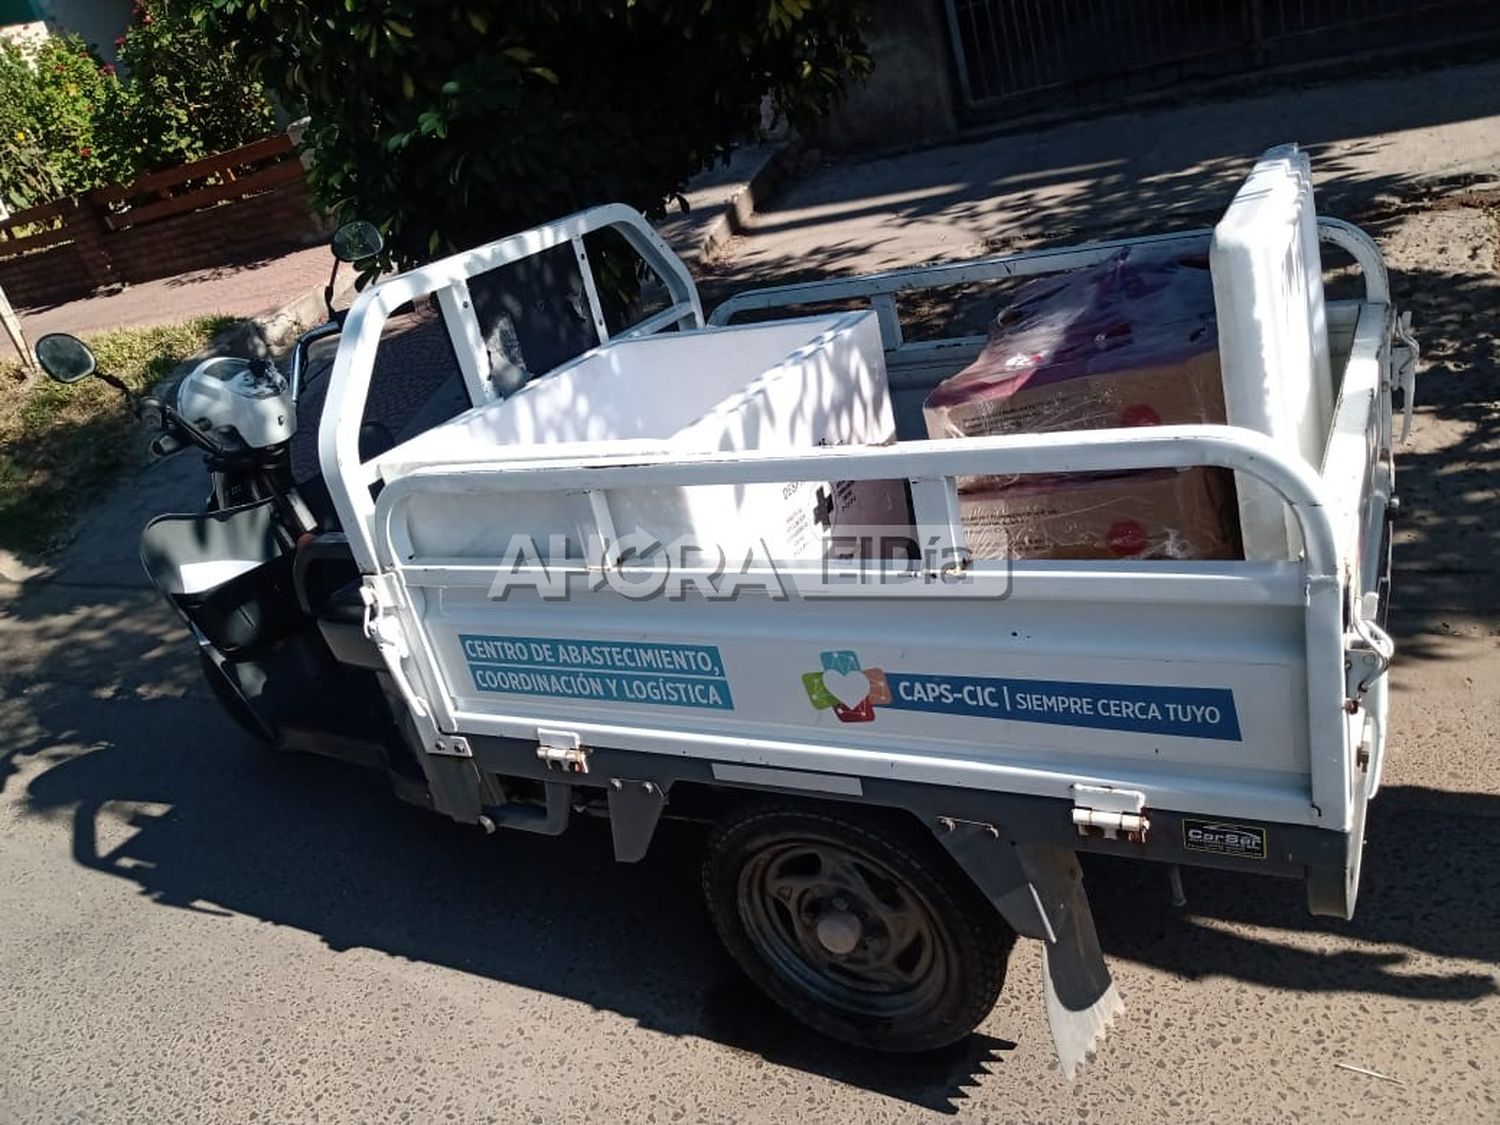 Insólito: una moto de la Municipalidad de Gualeguaychú transportaba pollos al rayo del sol